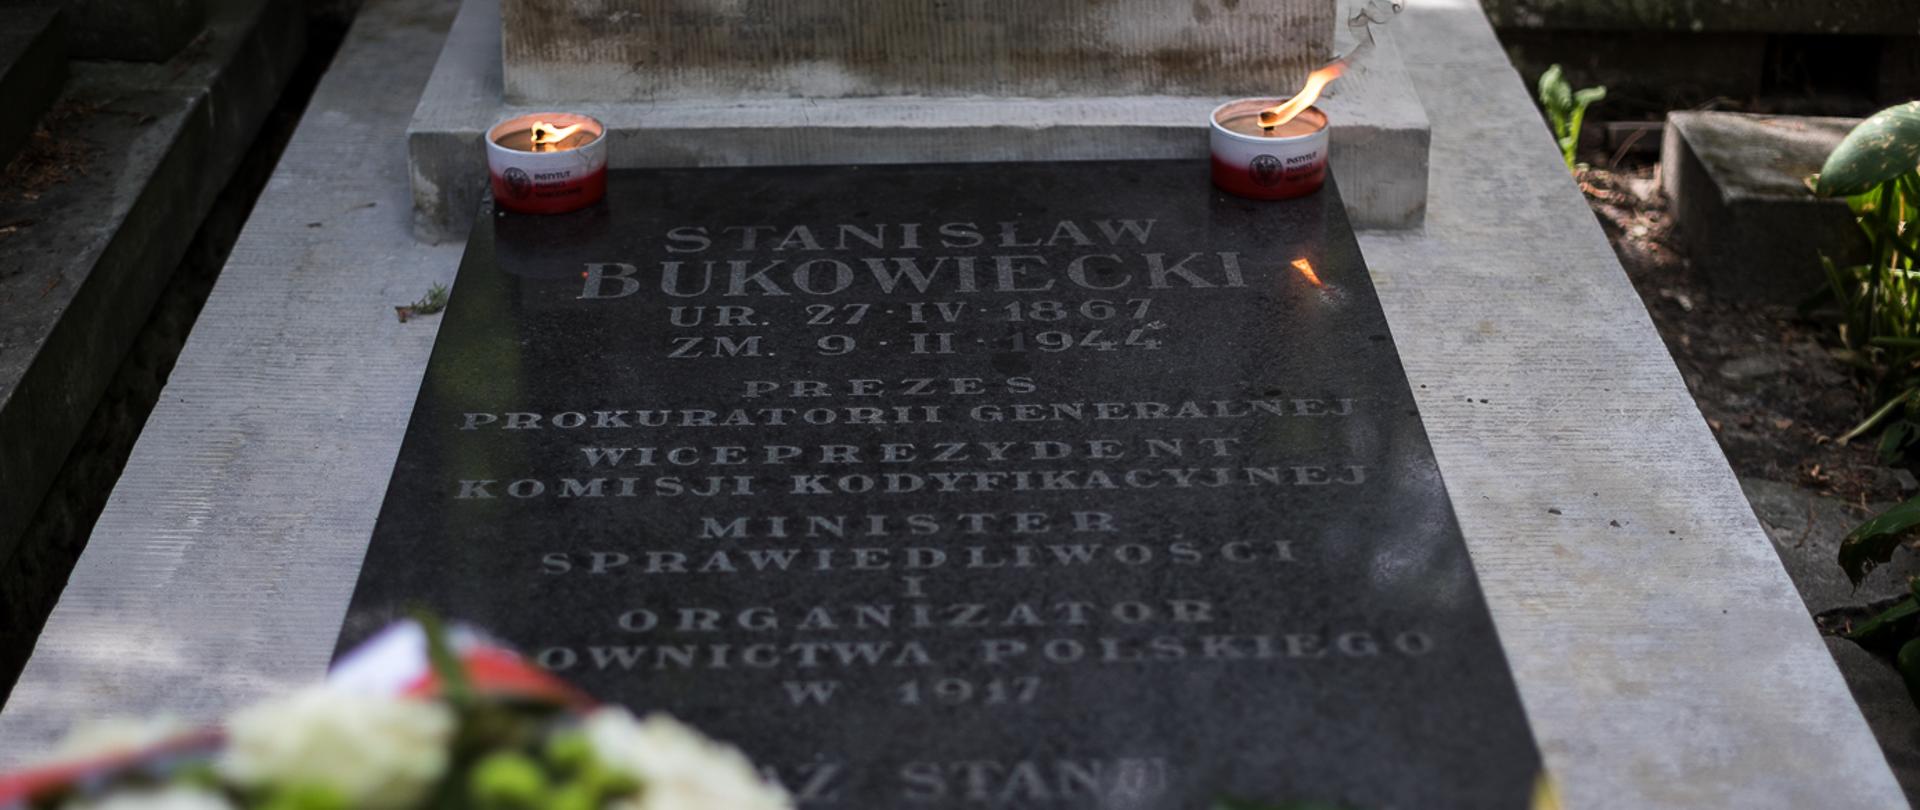 Złożenie kwiatów na nagrobku Stanisława Bukowieckiego 4